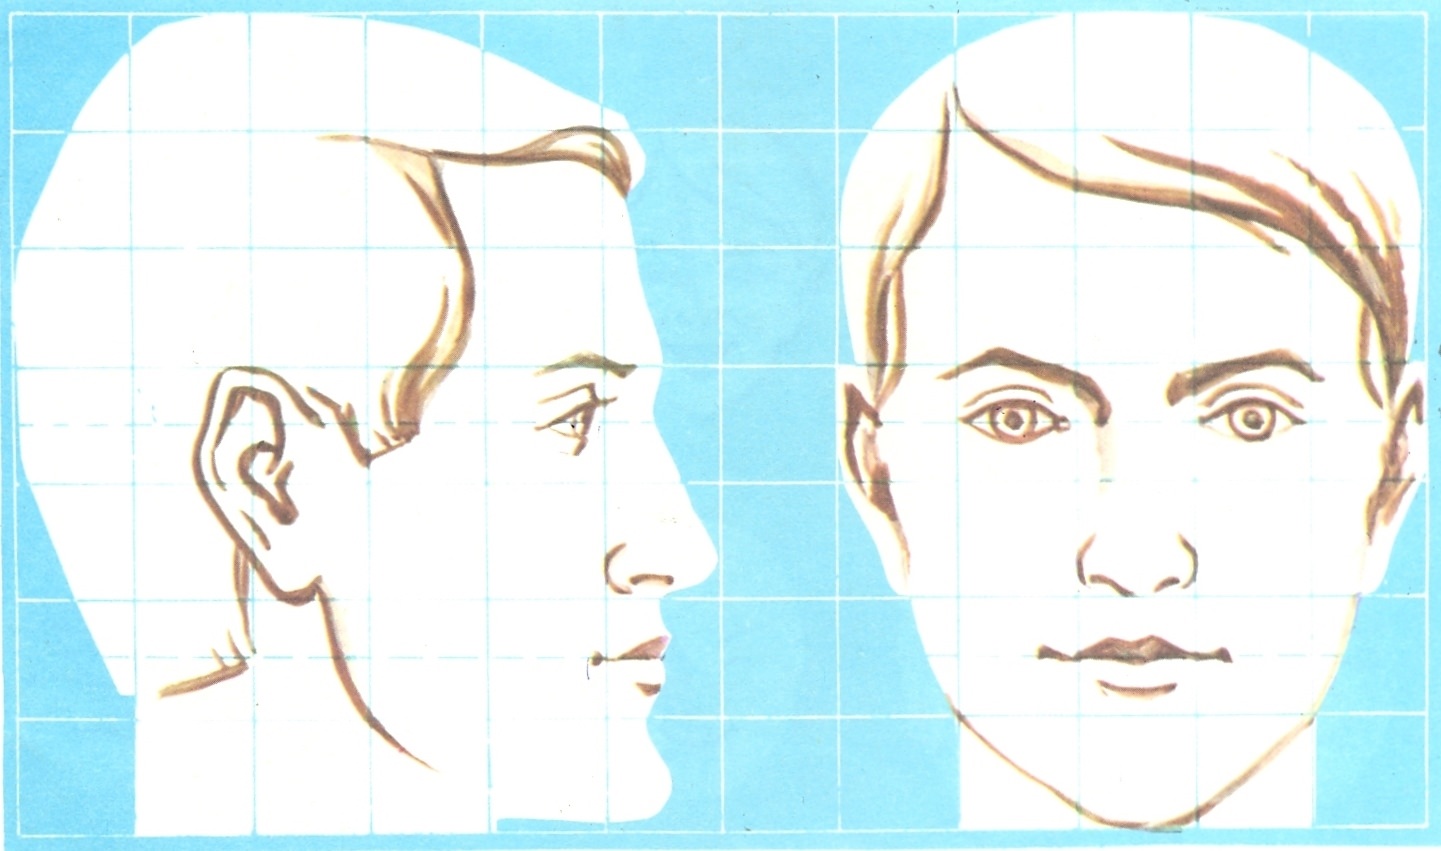 Рисунок лица 1 3. Пропорции головы человека анфас или профиль. Изображение головы человека в пространстве. Изображение головы человека анфас. Профиль лица.